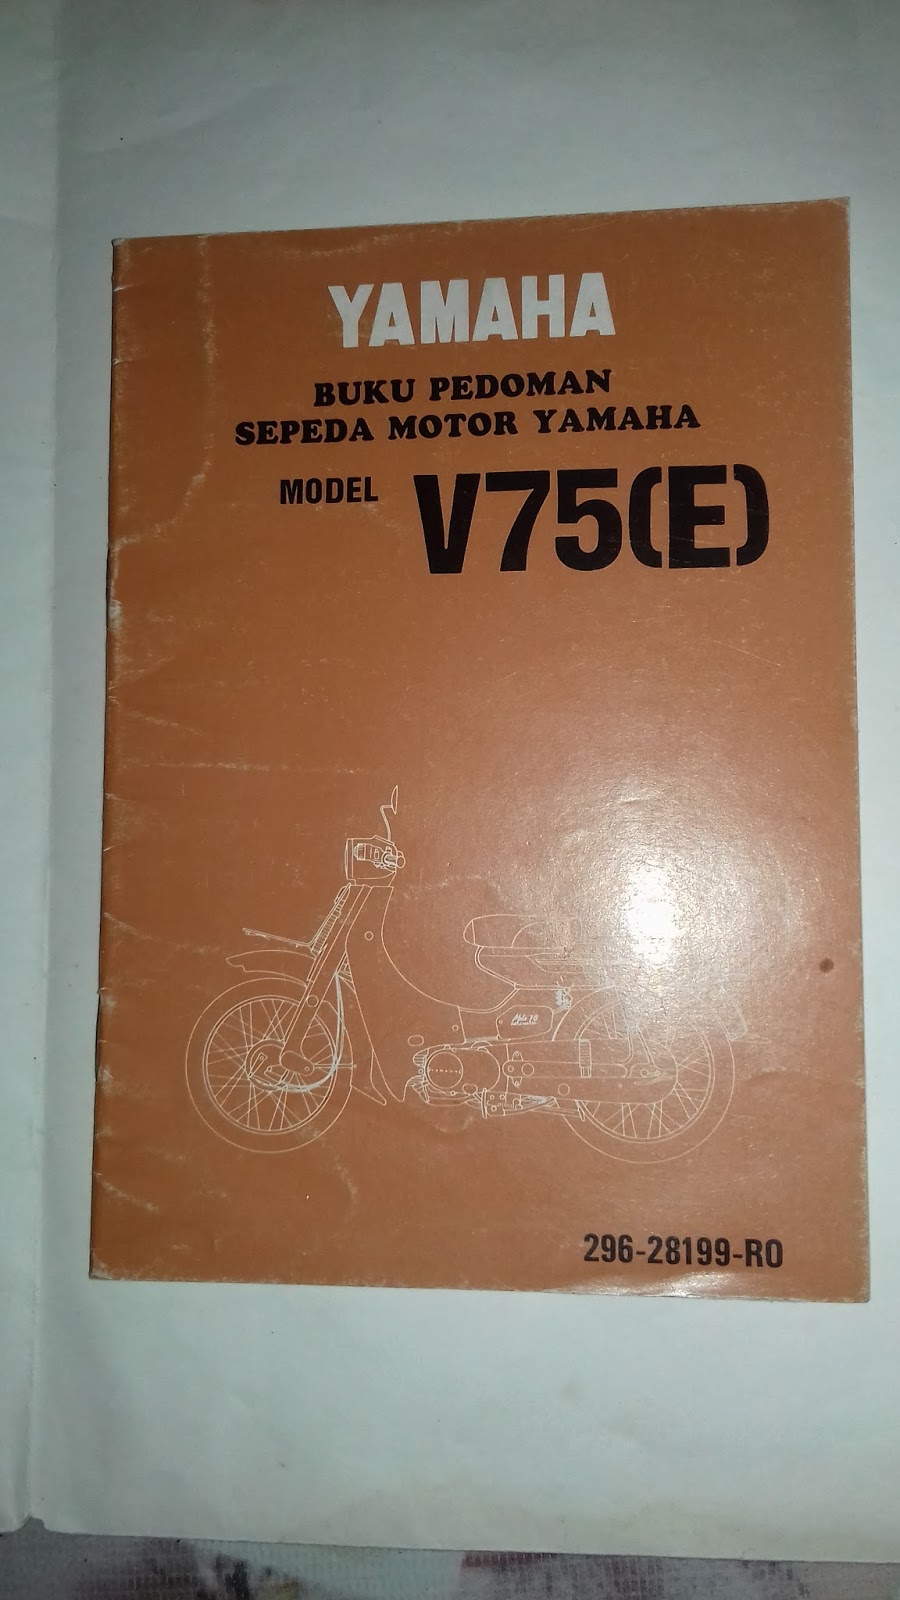 Gudang Barang Lawas: Manual book " YAMAHA V 75( E )